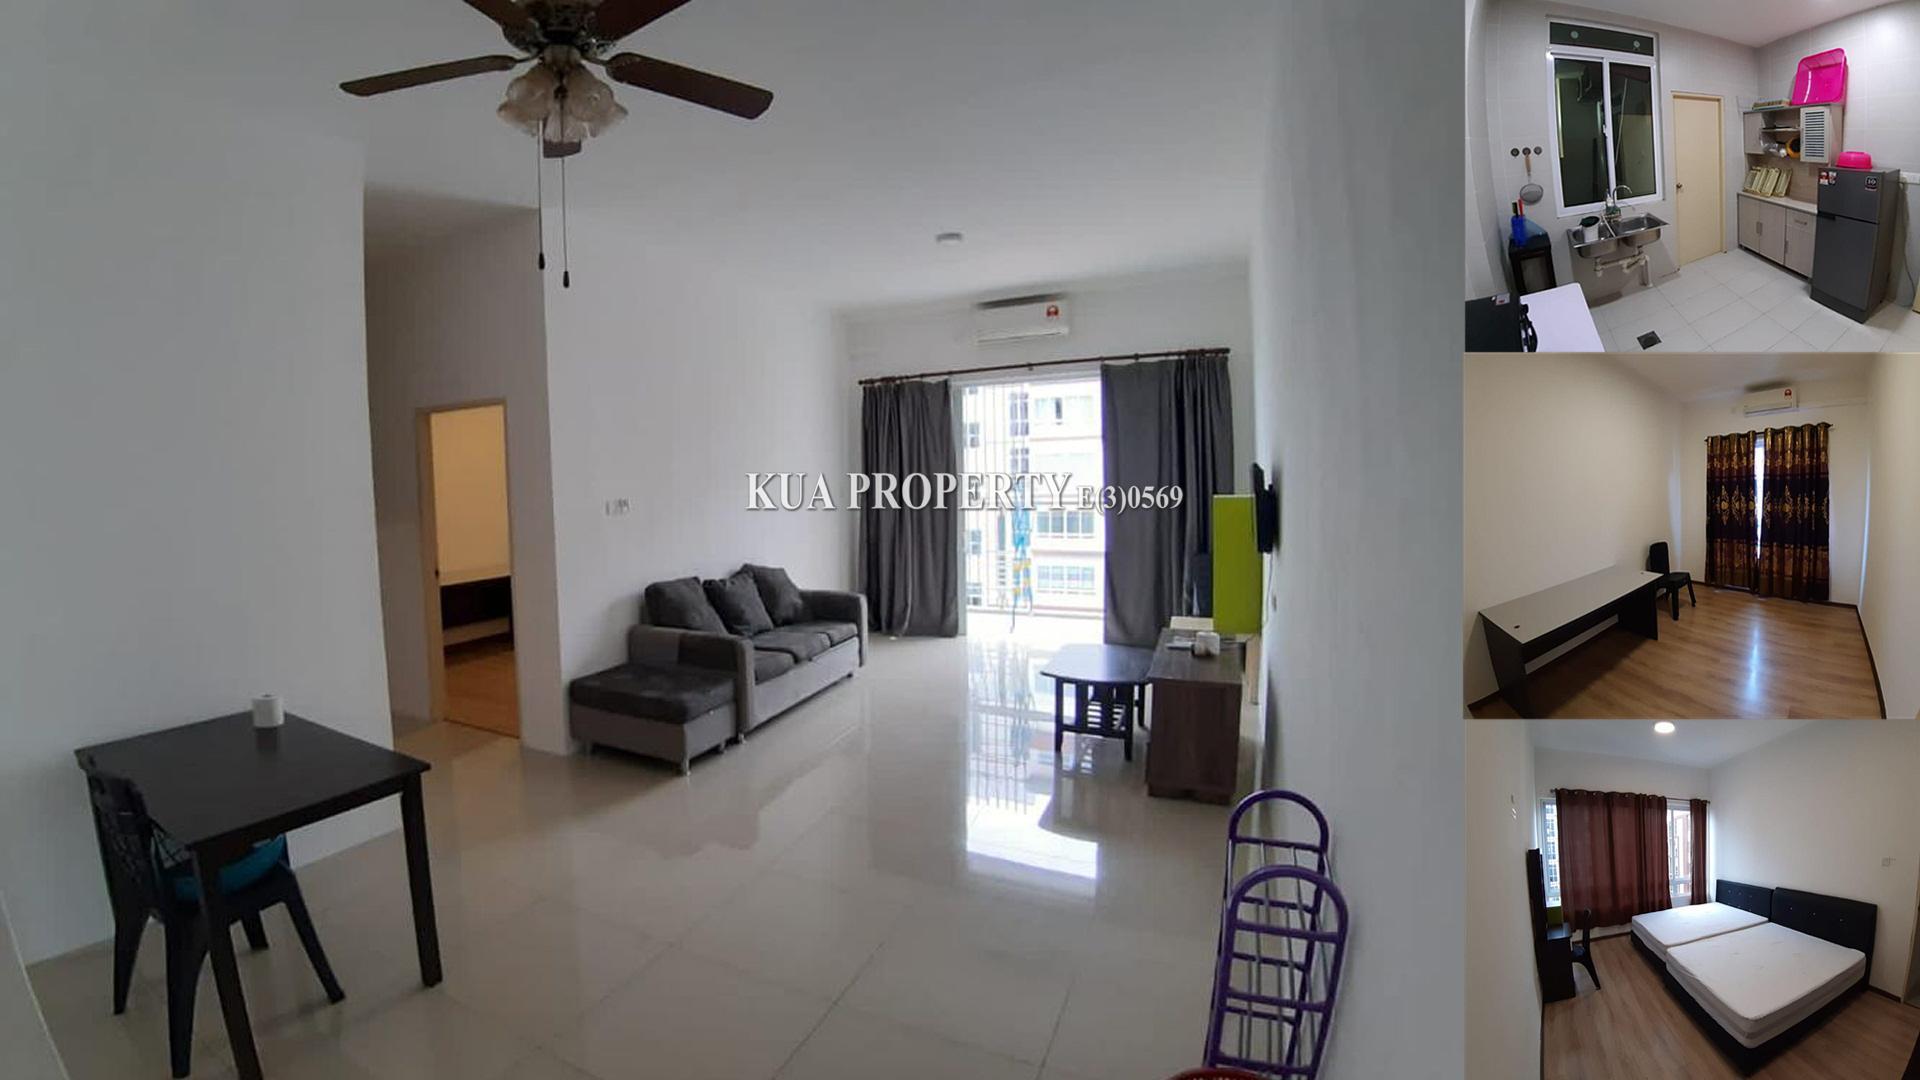 P’residence Condominium For Rent! at Batu Kawa